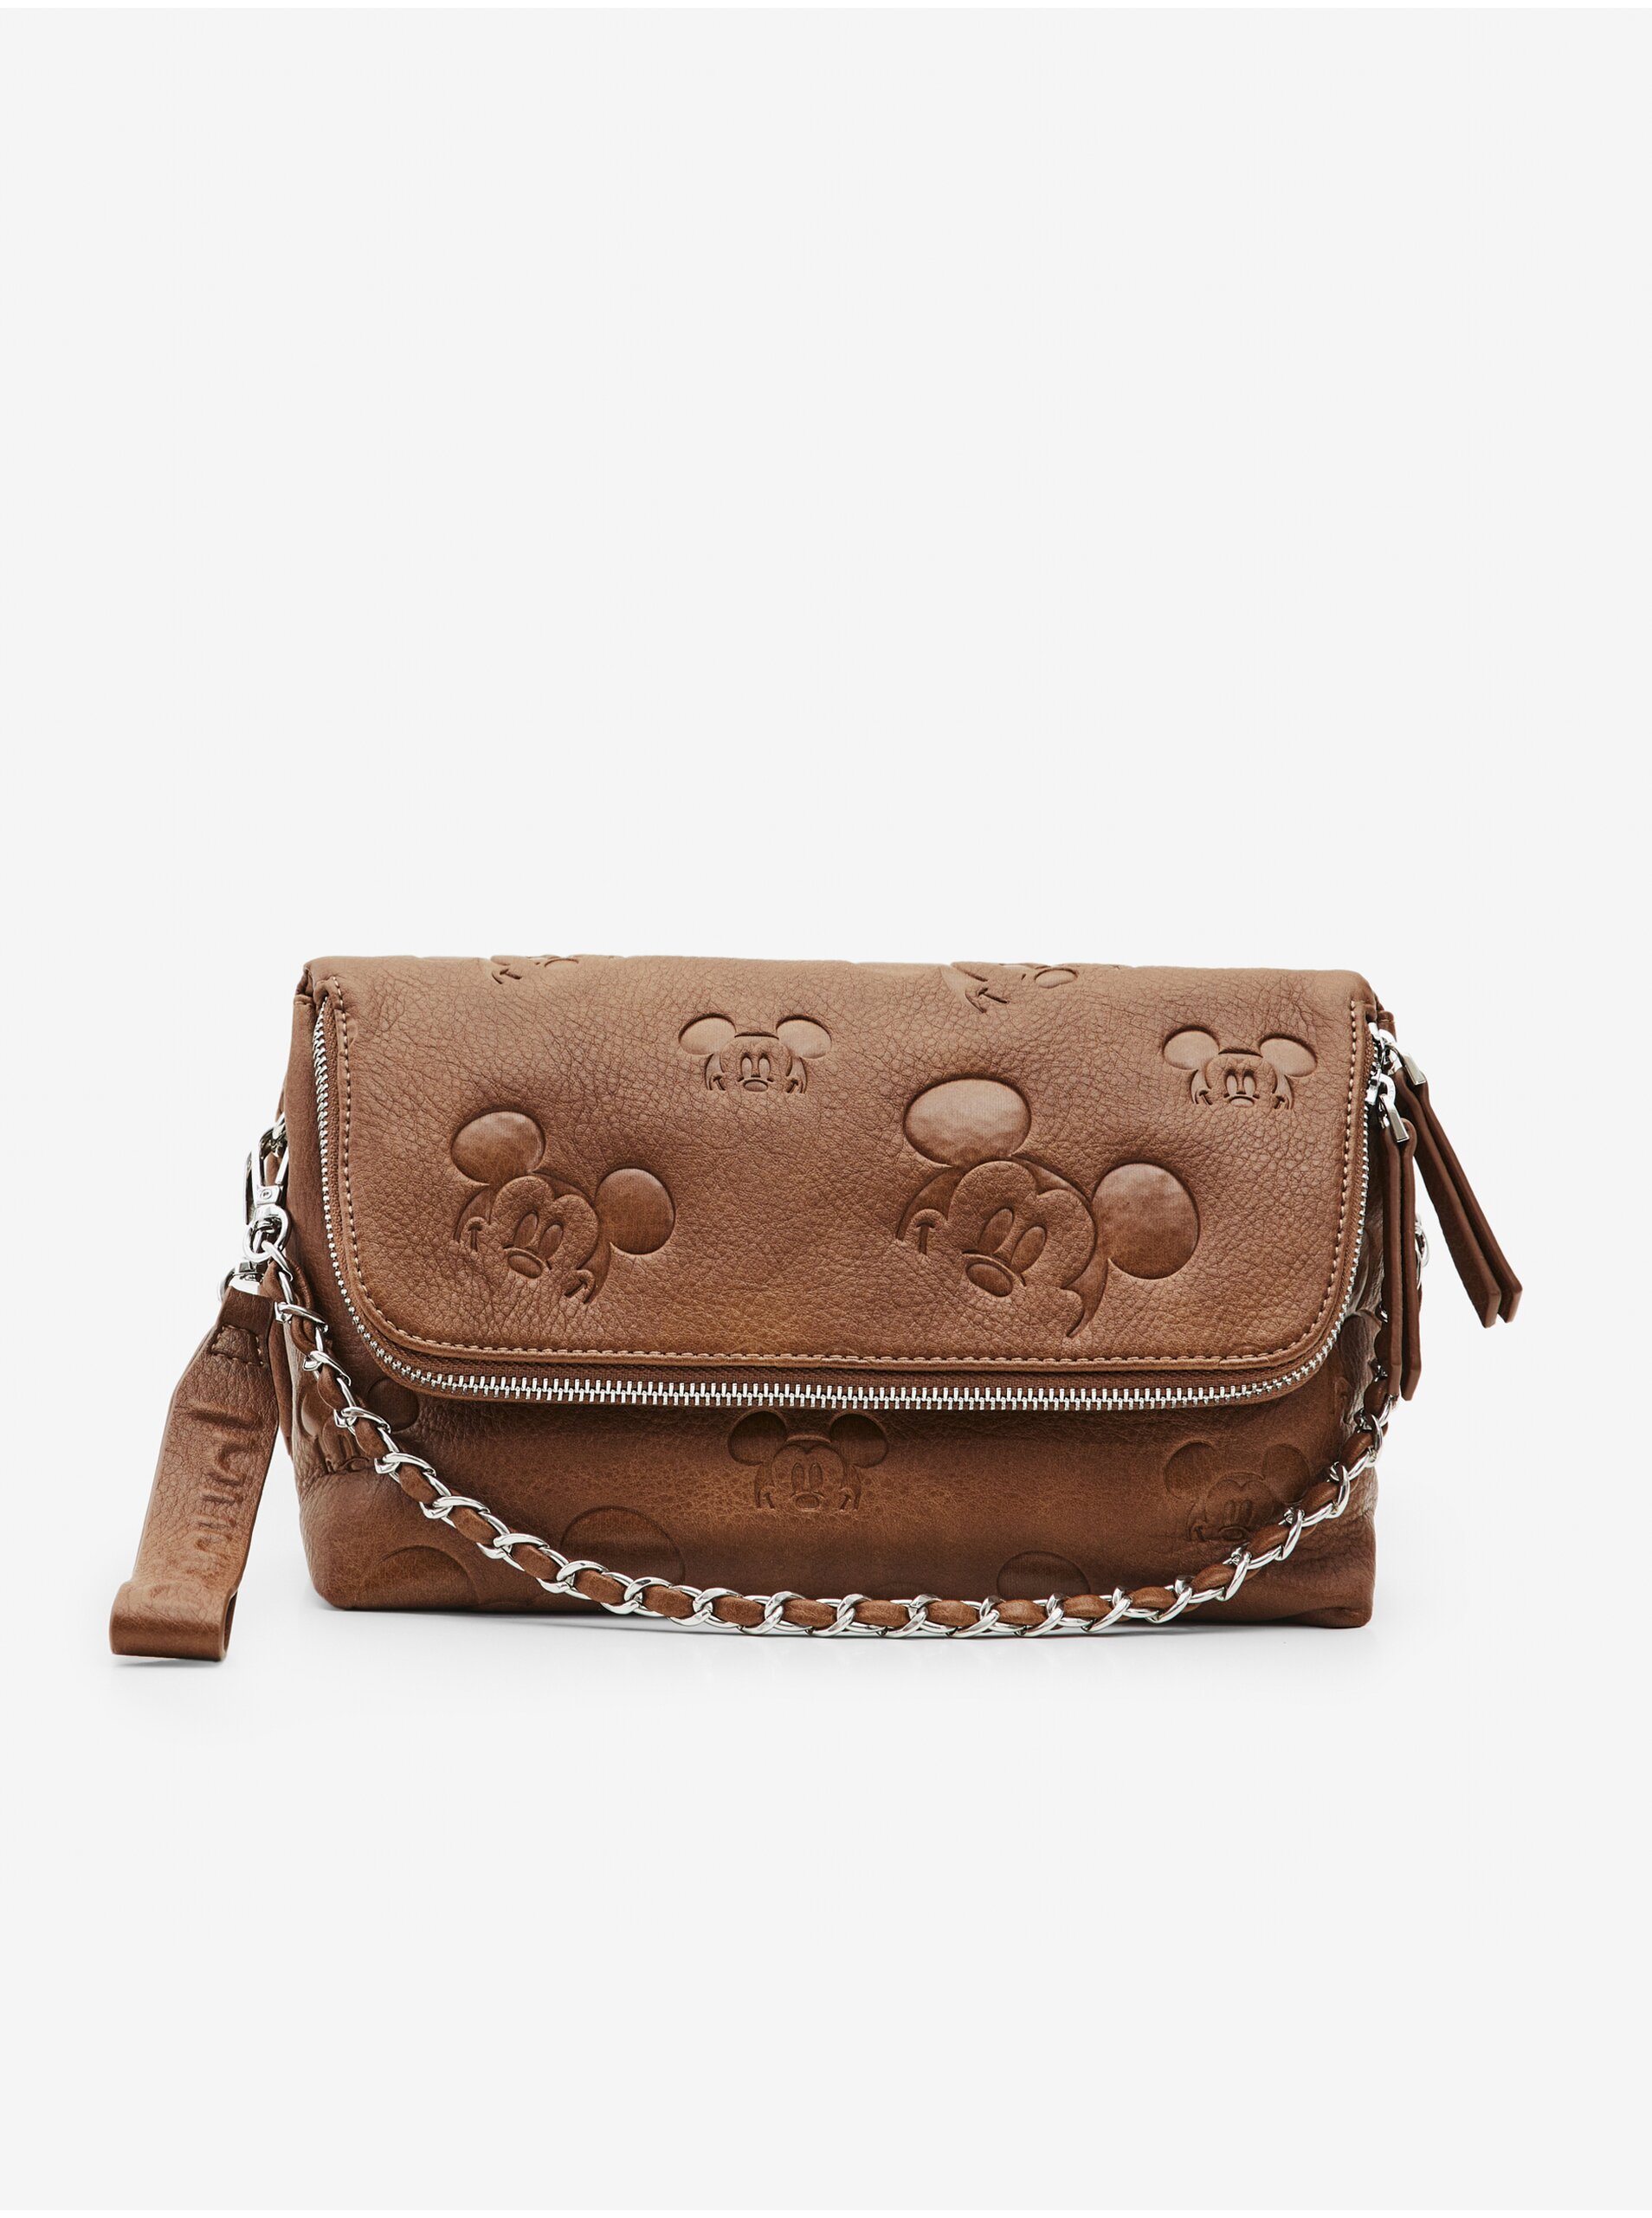 Desigual All Mickey Venecia Brown Patterned Handbag - Women